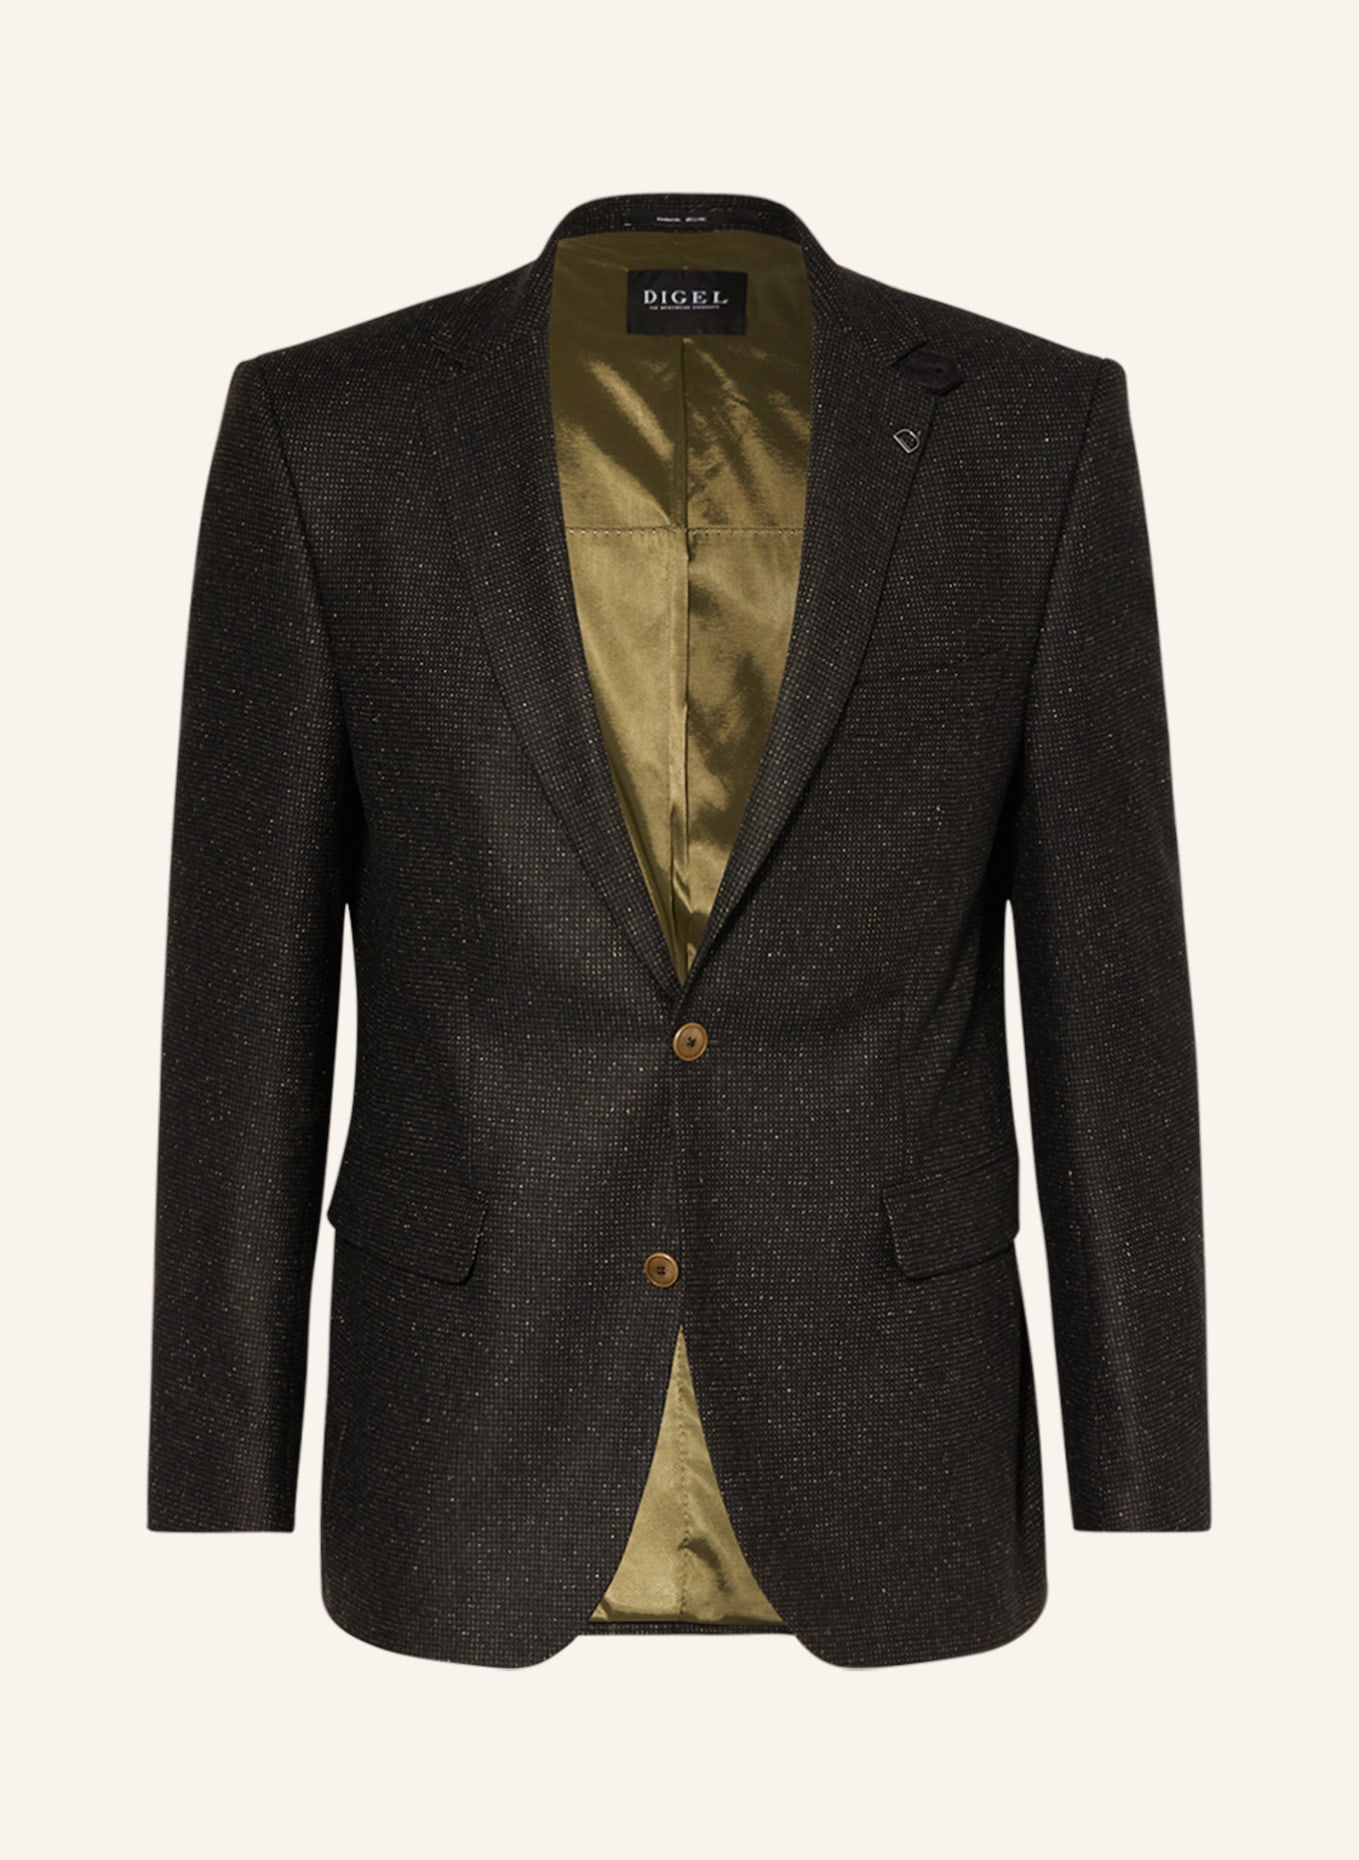 DIGEL Suit jacket EZZO regular fit, Color: 52 Grün (Image 1)